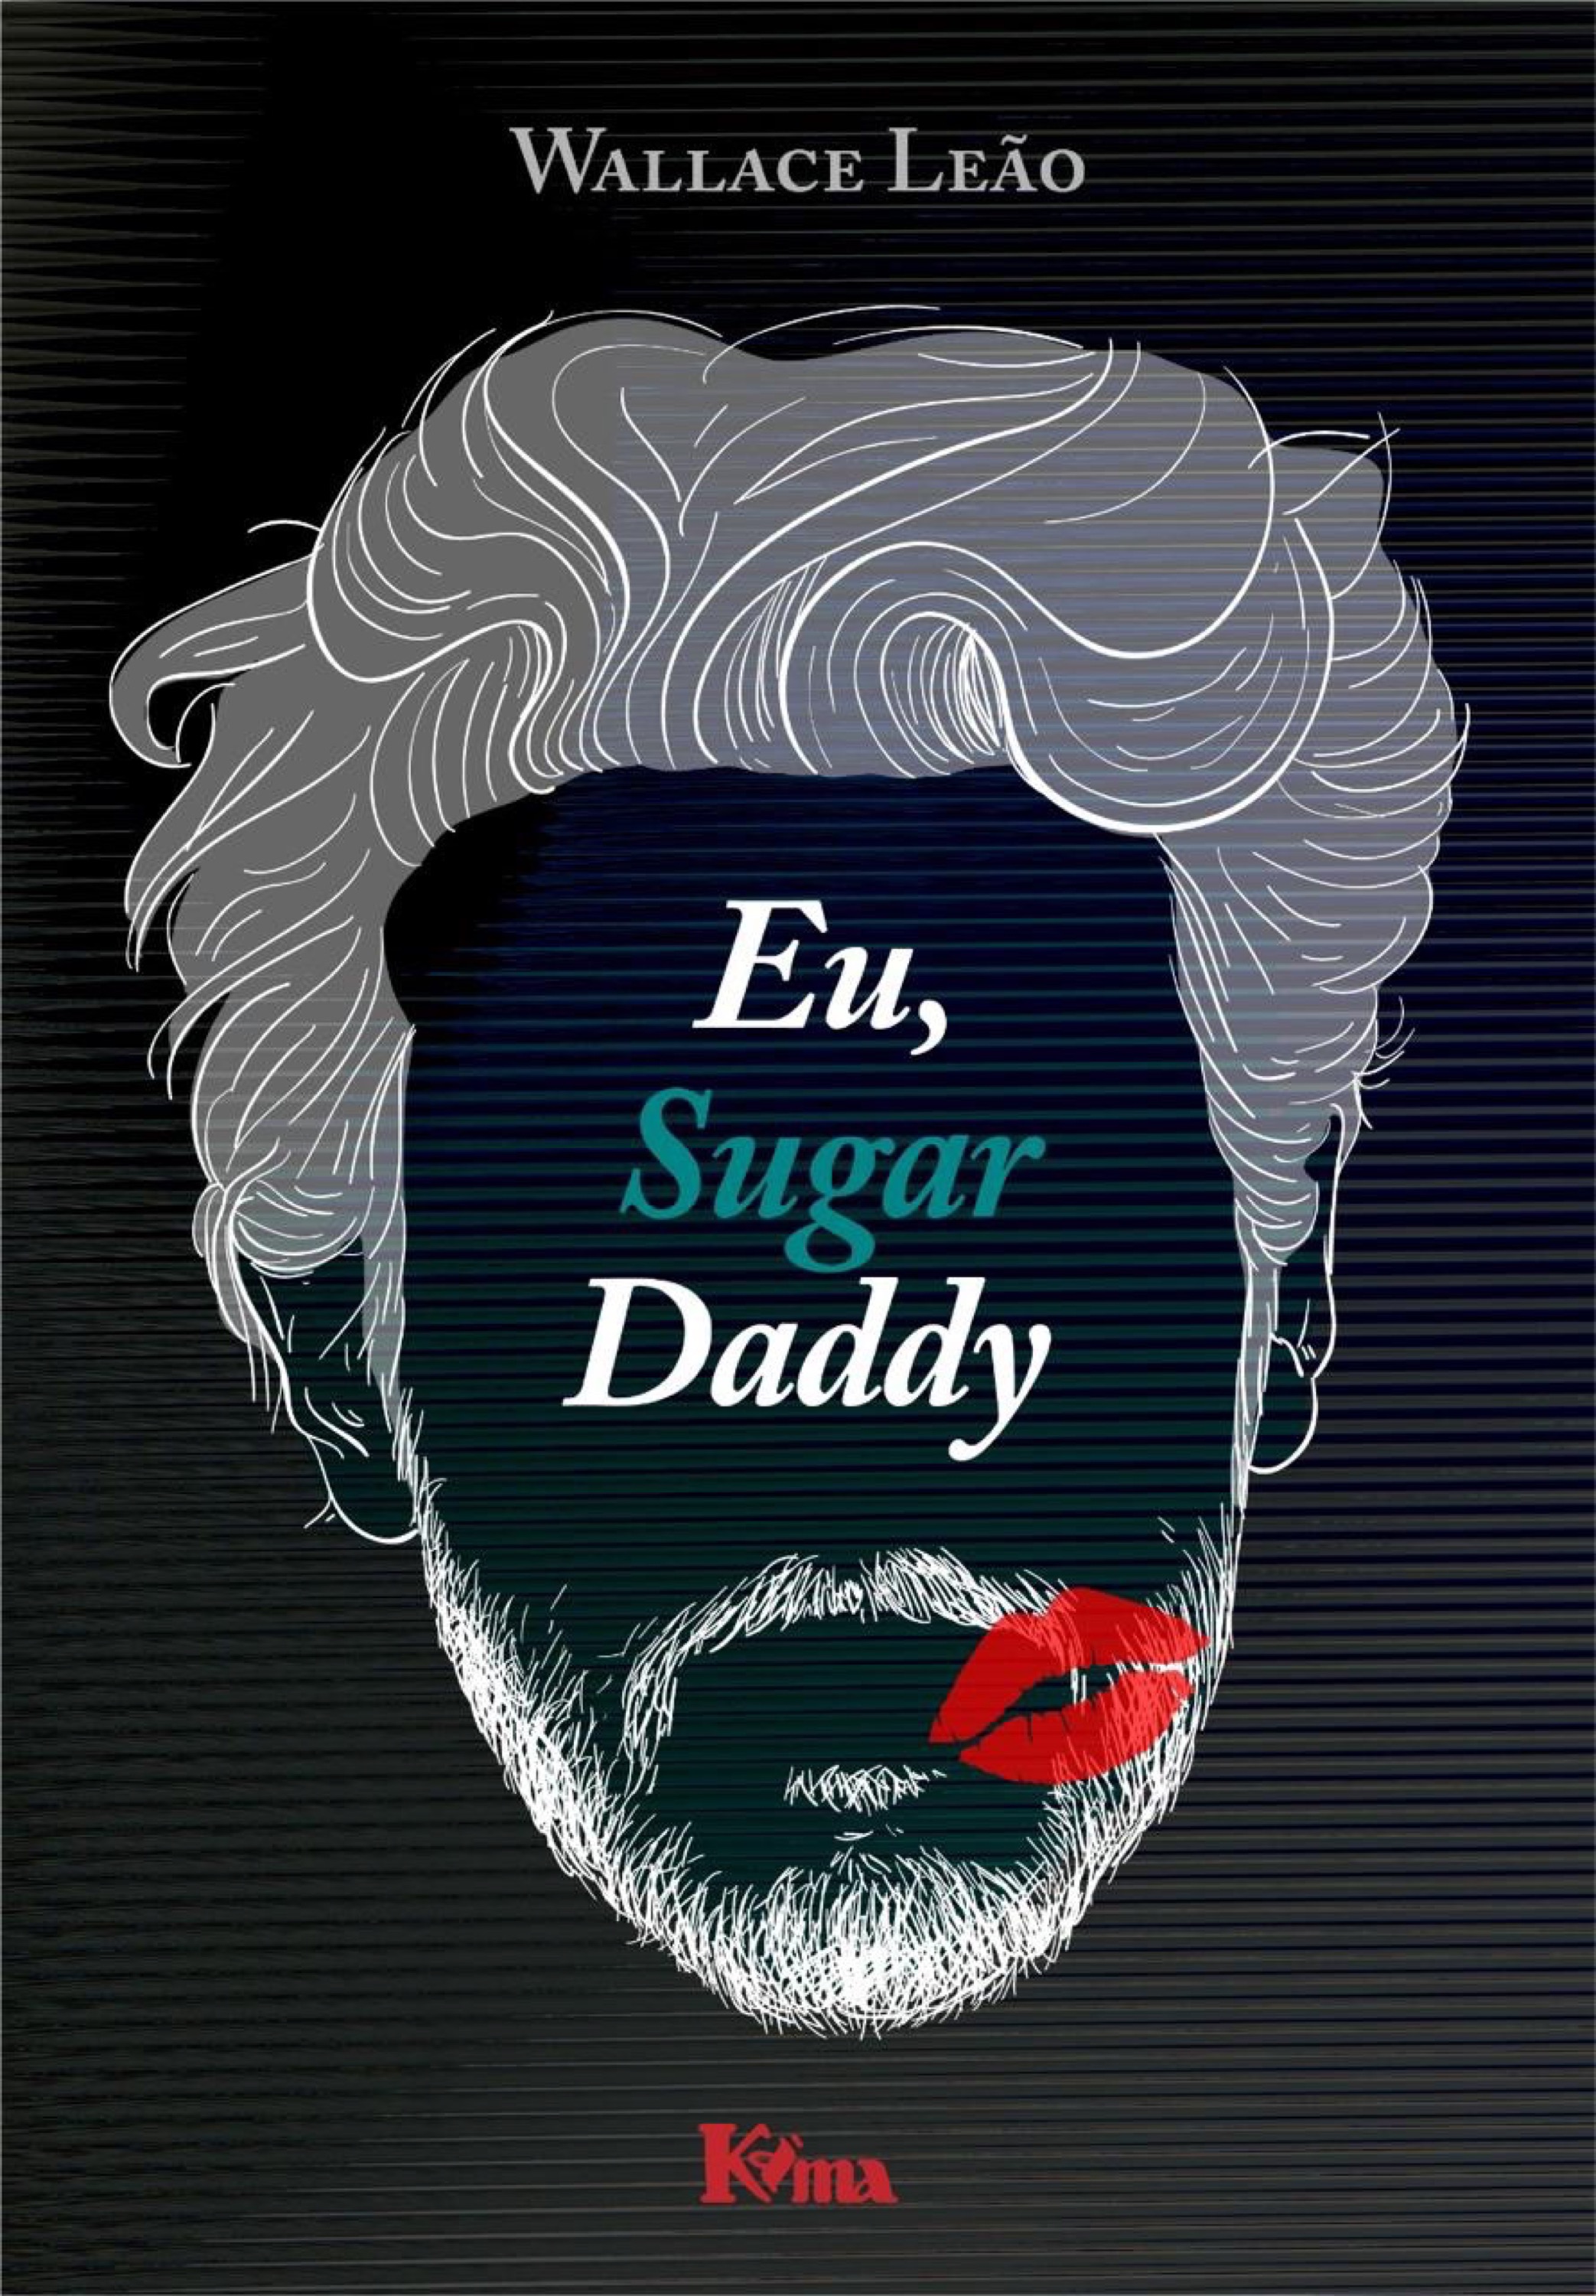 Eu, sugar daddy